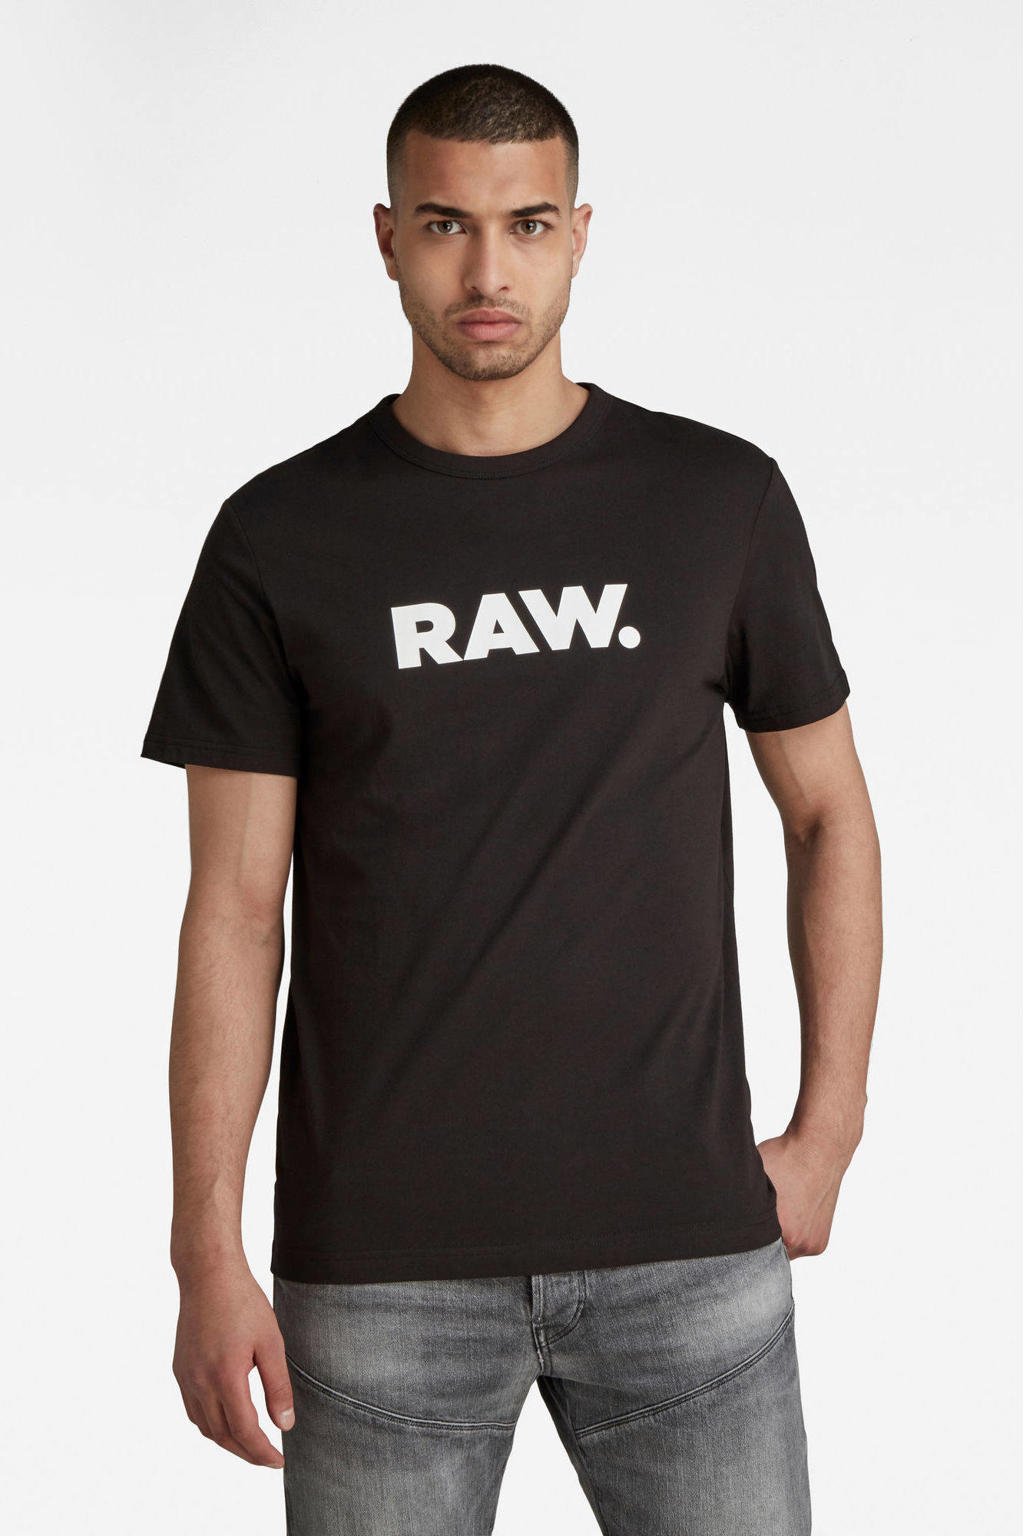 Zwart en witte heren G-Star RAW Holorn T-shirt van biologisch katoen met printopdruk, korte mouwen en ronde hals